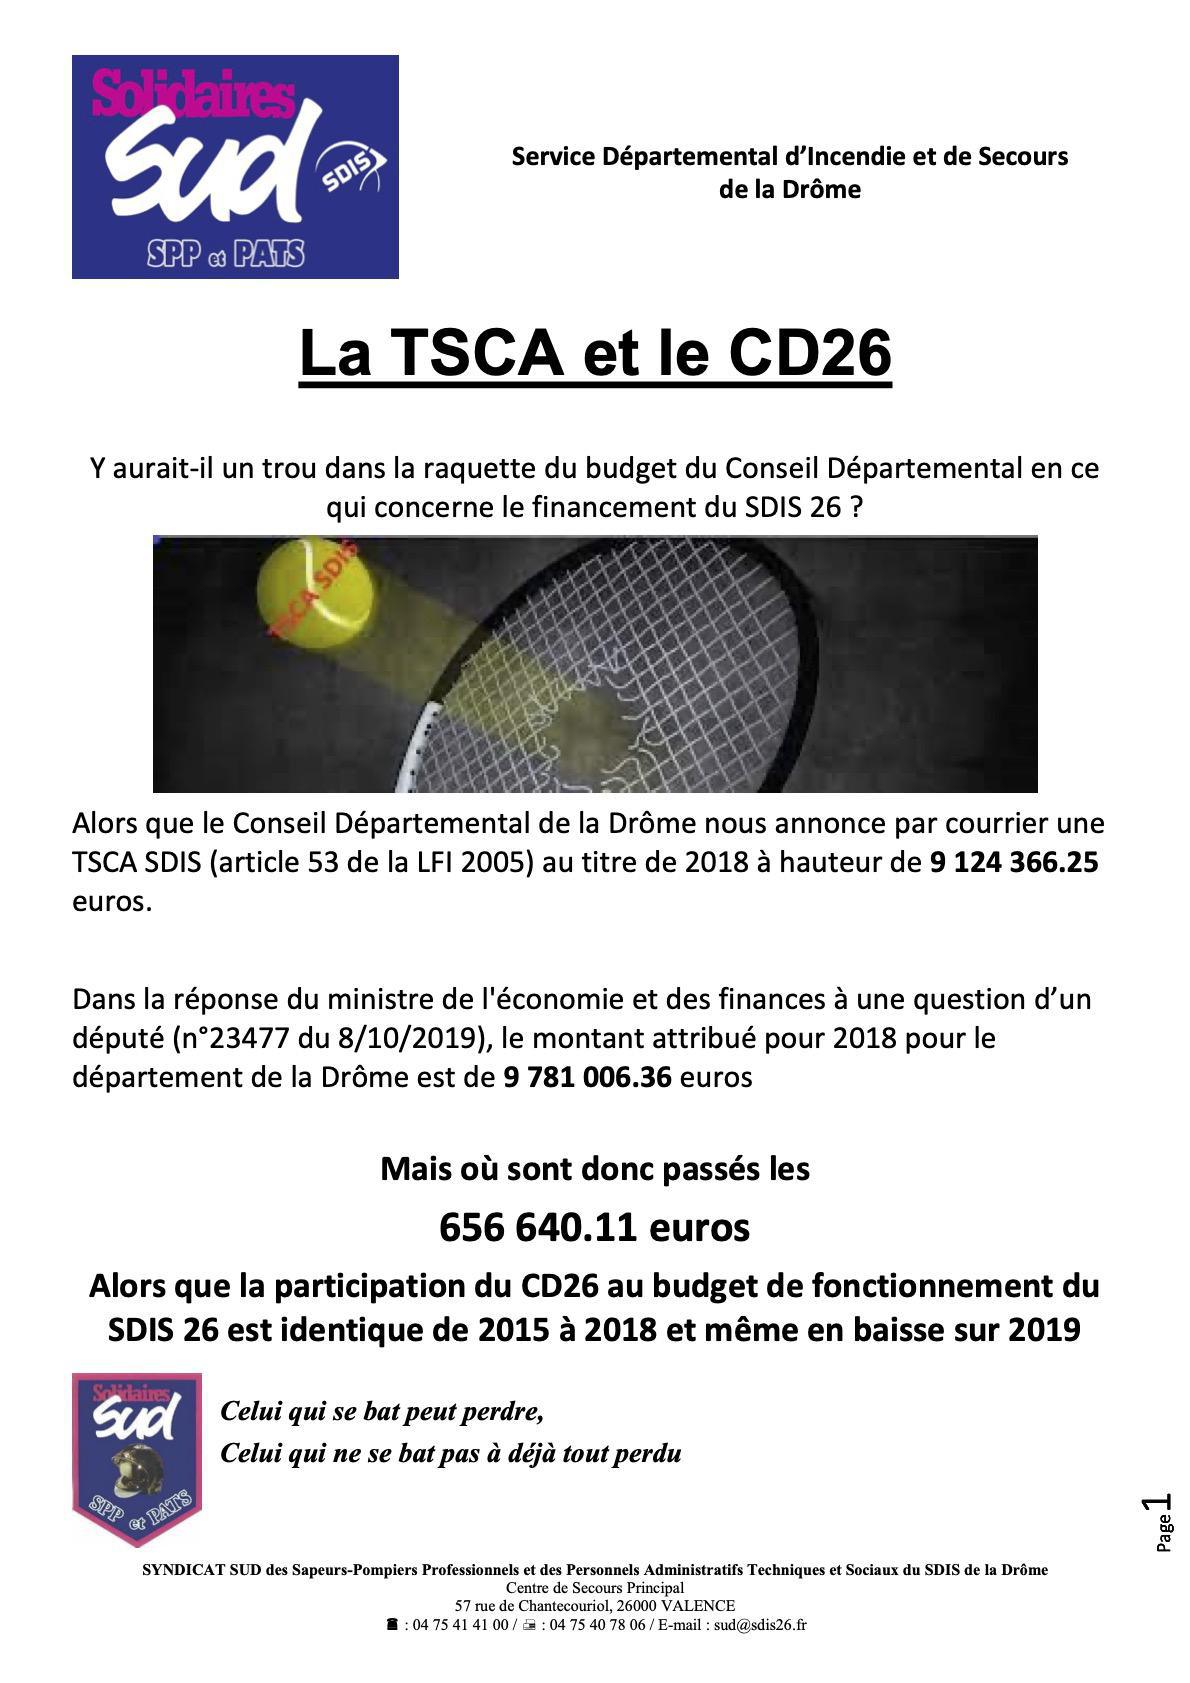 La TSCA et le Conseil Départemental de la Drôme